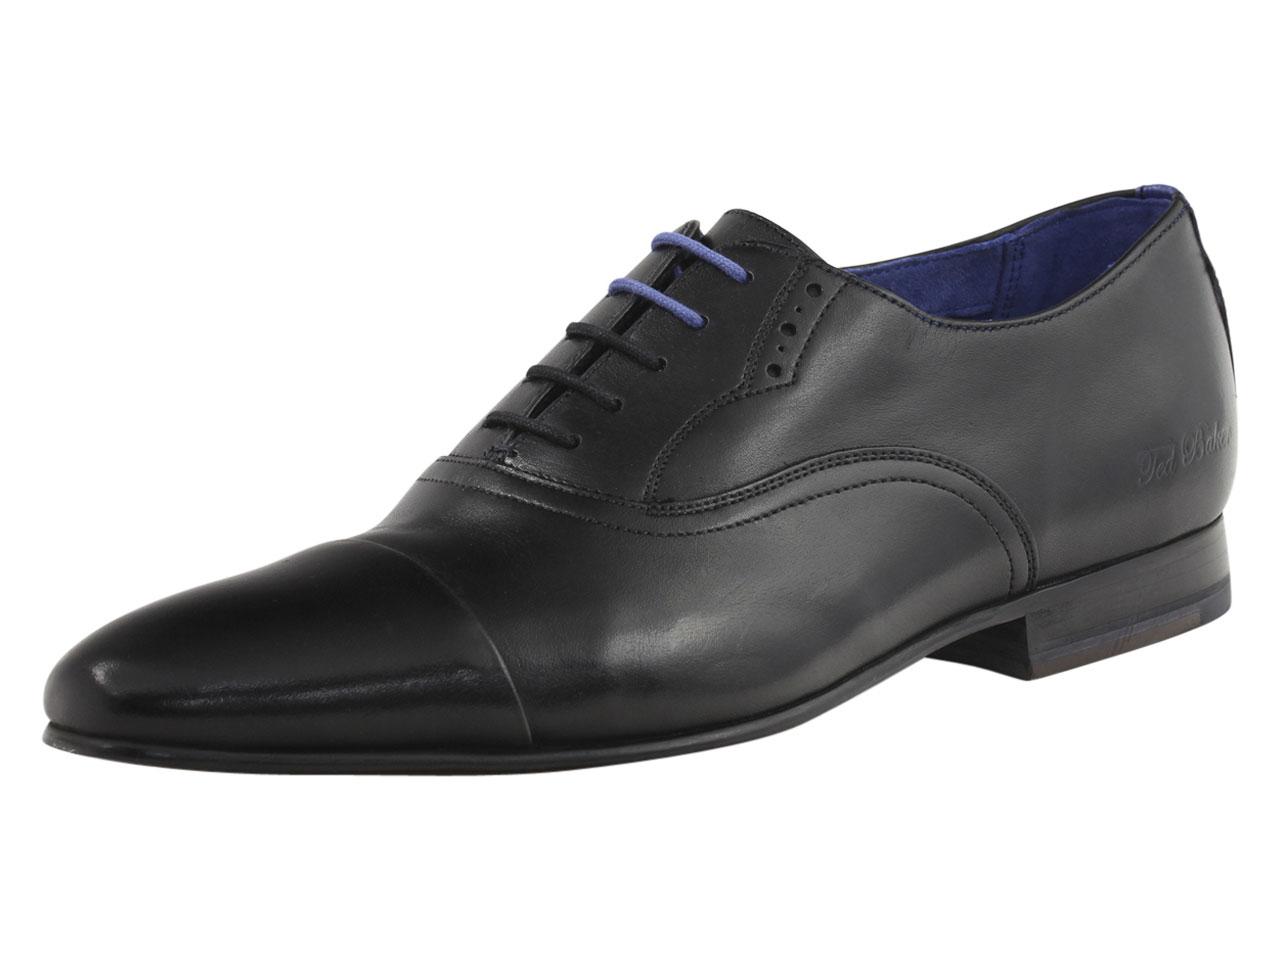 Ted Baker Men's Murain Fashion Oxfords Shoes - Black - 10.5 D(M) US